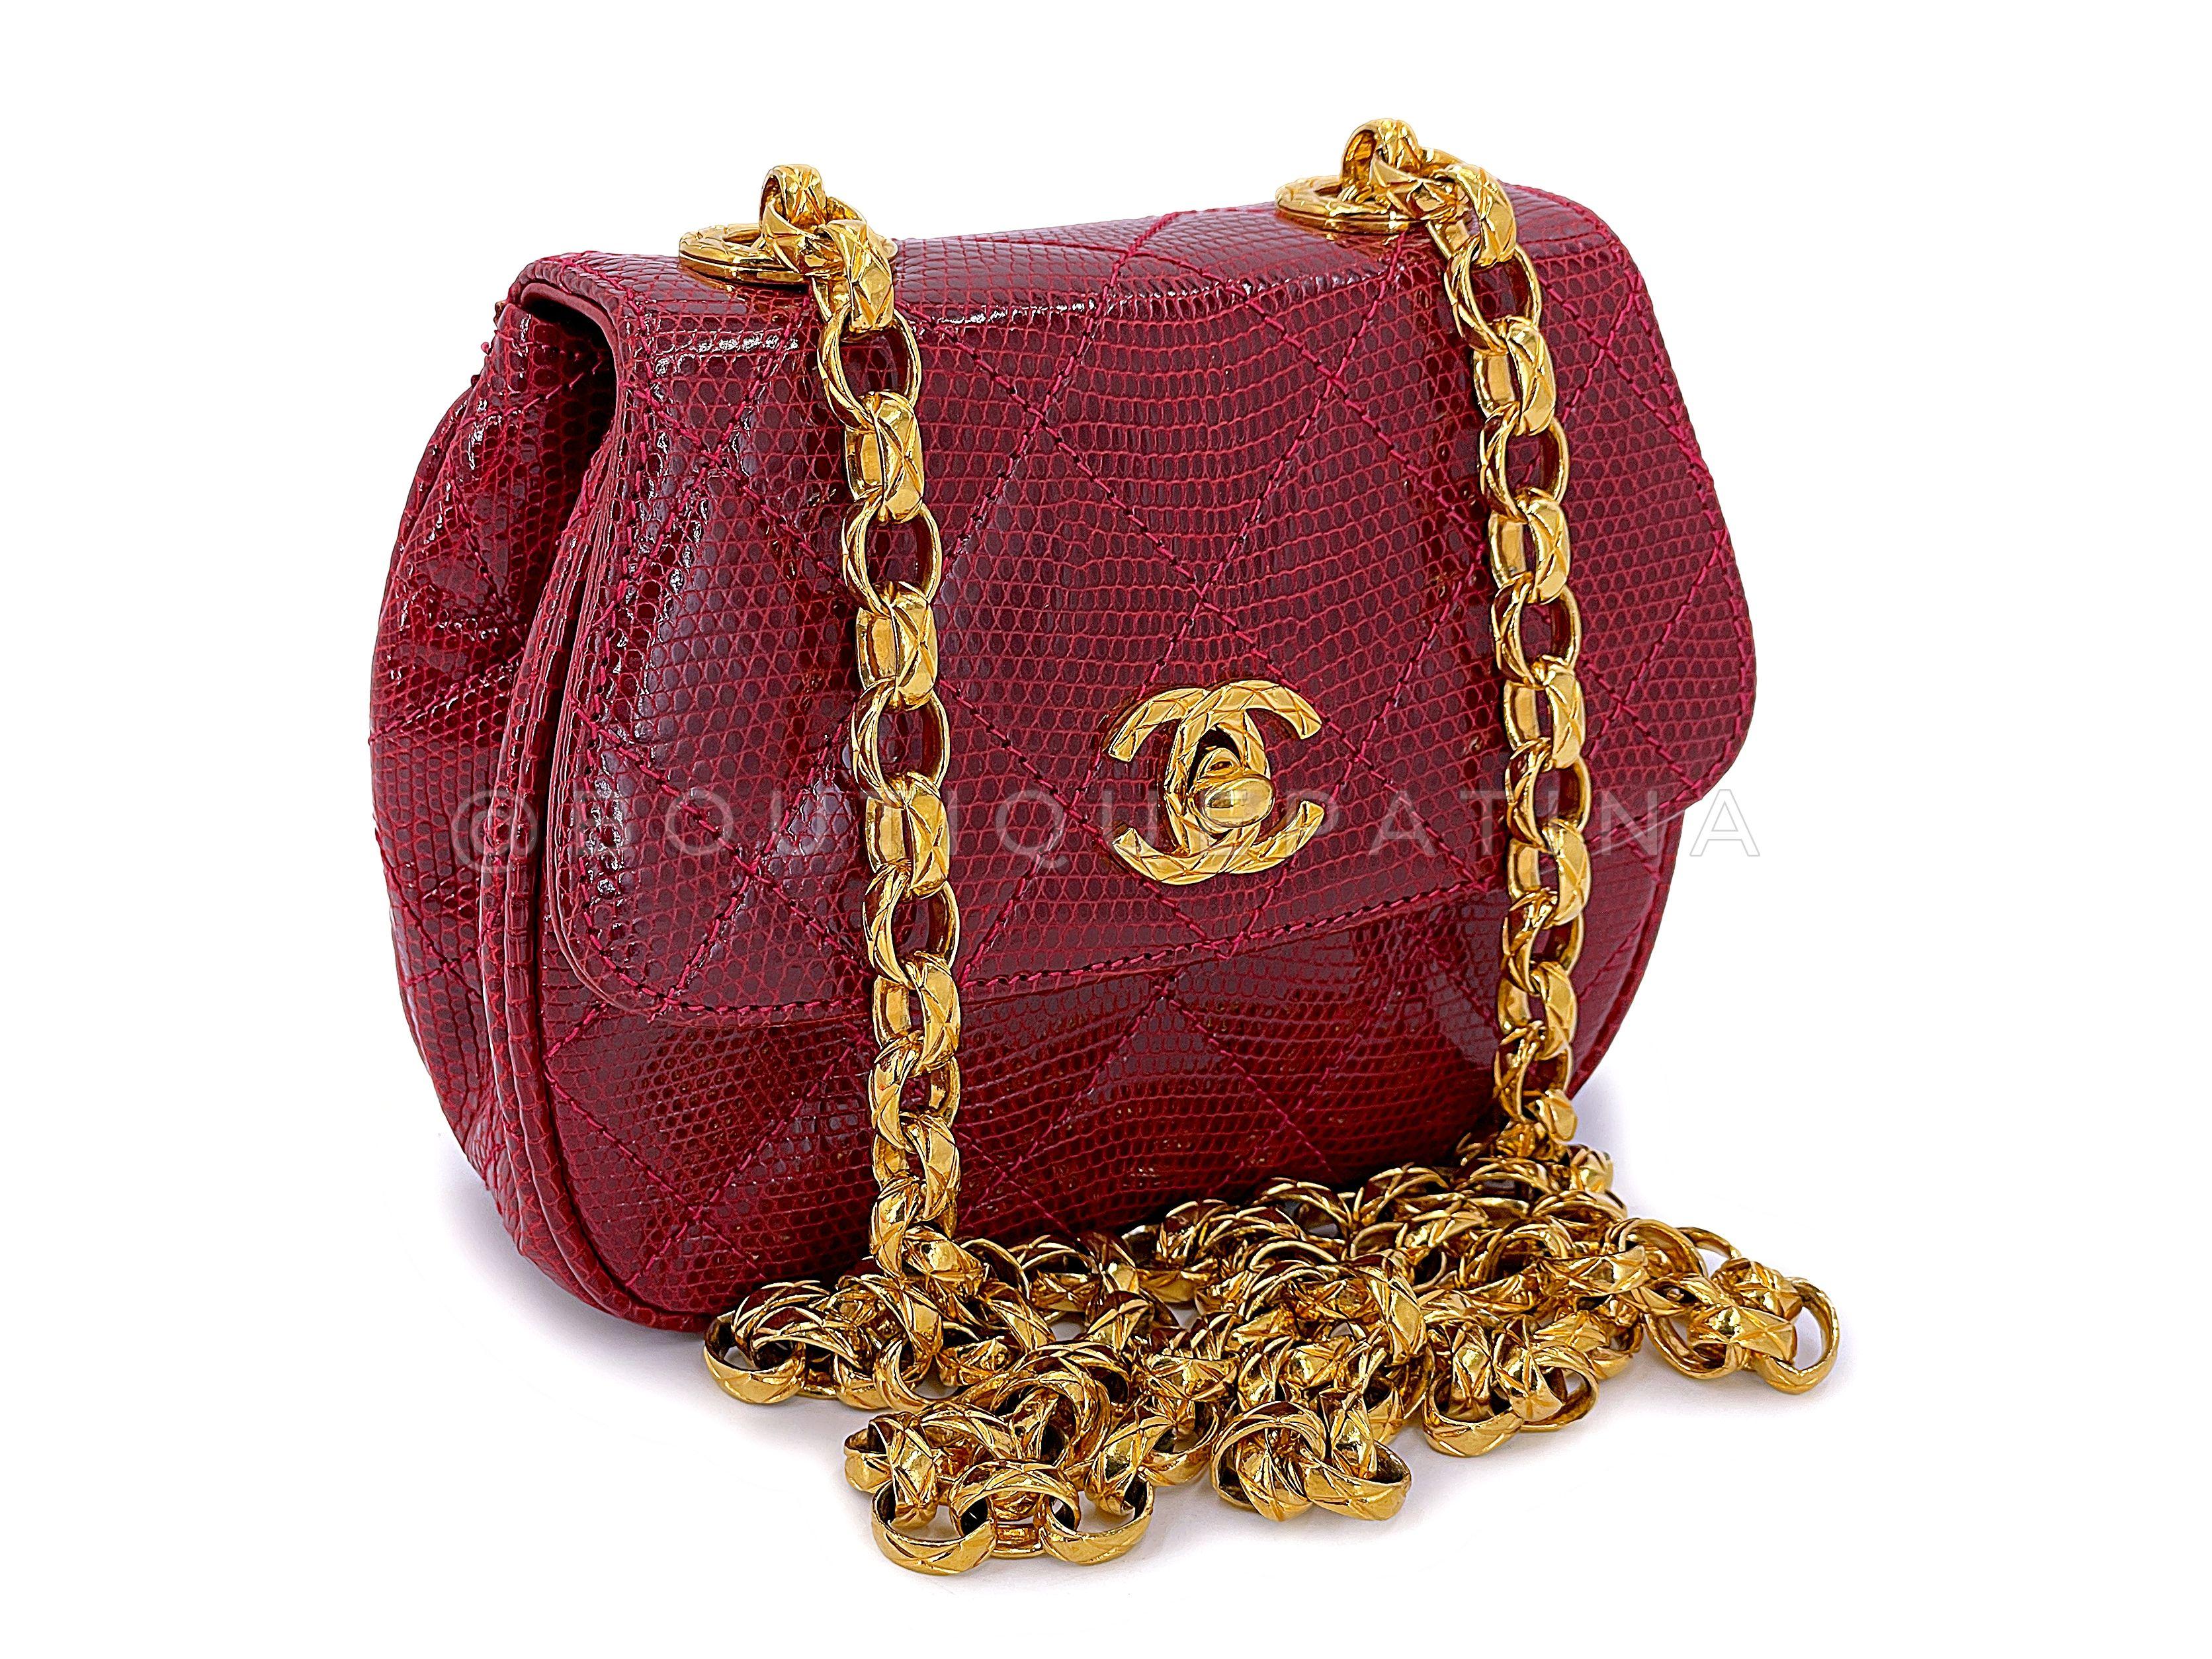 Artikel speichern: 67290
Diese seltene Chanel 1980s Vintage Red Lizard Etched Chain Round Mini Flap Bag ist ein seltenes Juwel einer Tasche - aus zu vielen Gründen. 

Das rote gesteppte Eidechsenleder ist in tadellosem Zustand, ebenso wie die